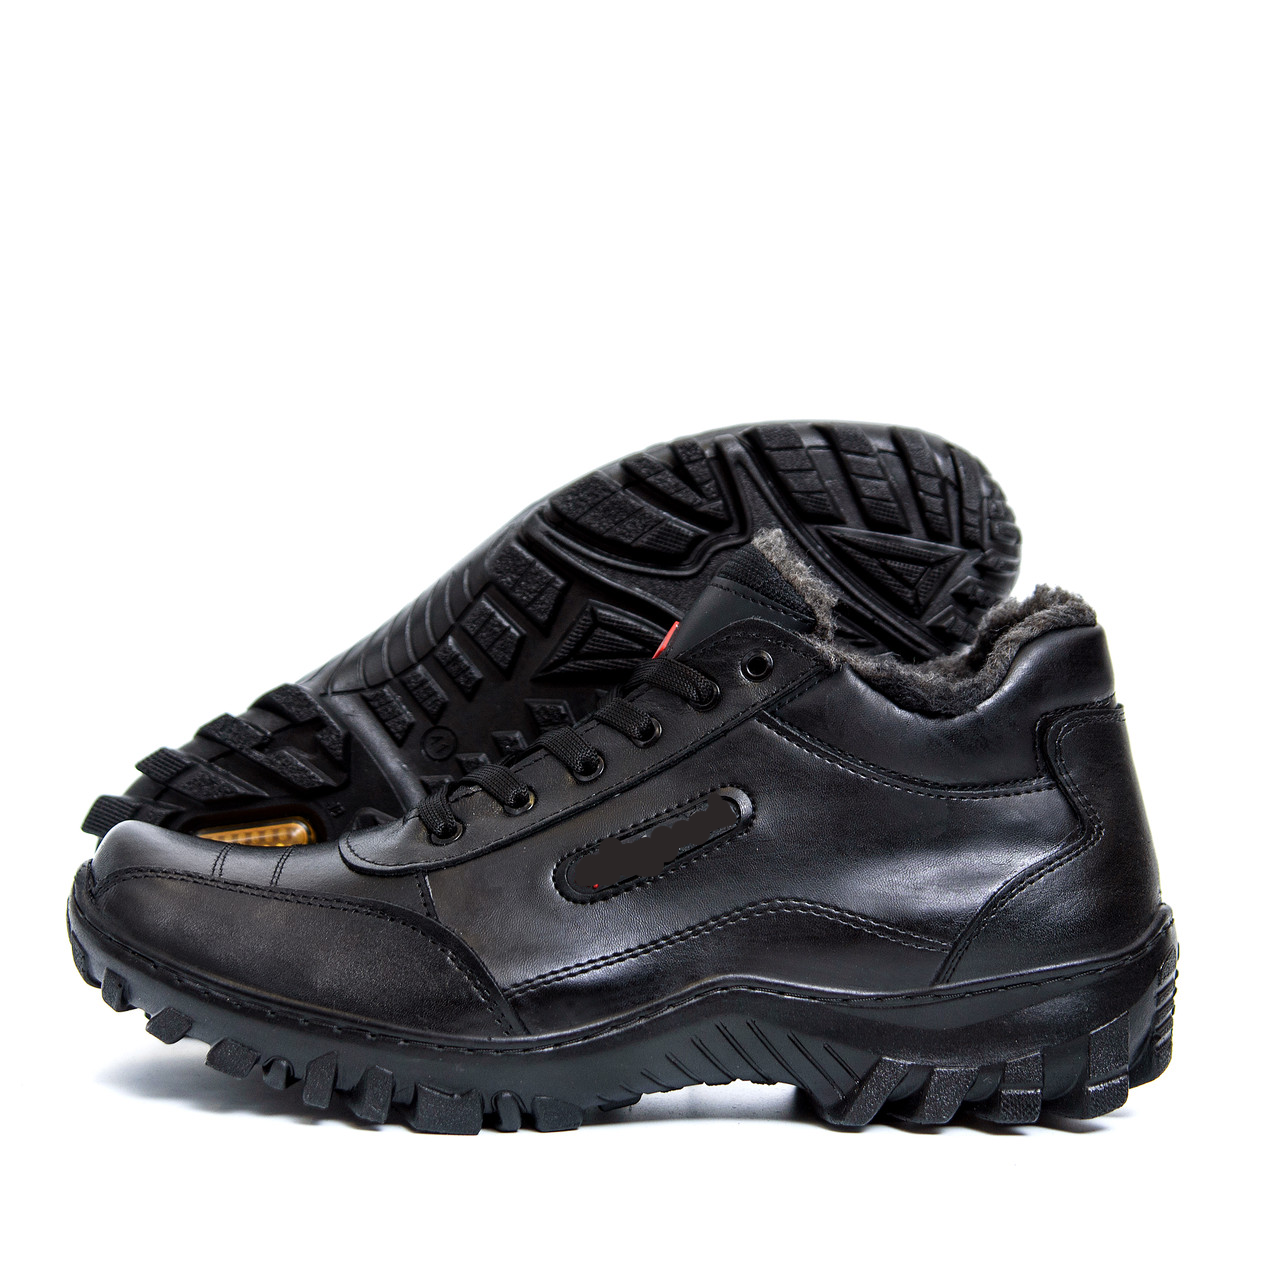 Чоловічі зимові шкіряні черевики ZK Antishok Winter Shoes р. 39 40 41 42 43 44 45, фото 1